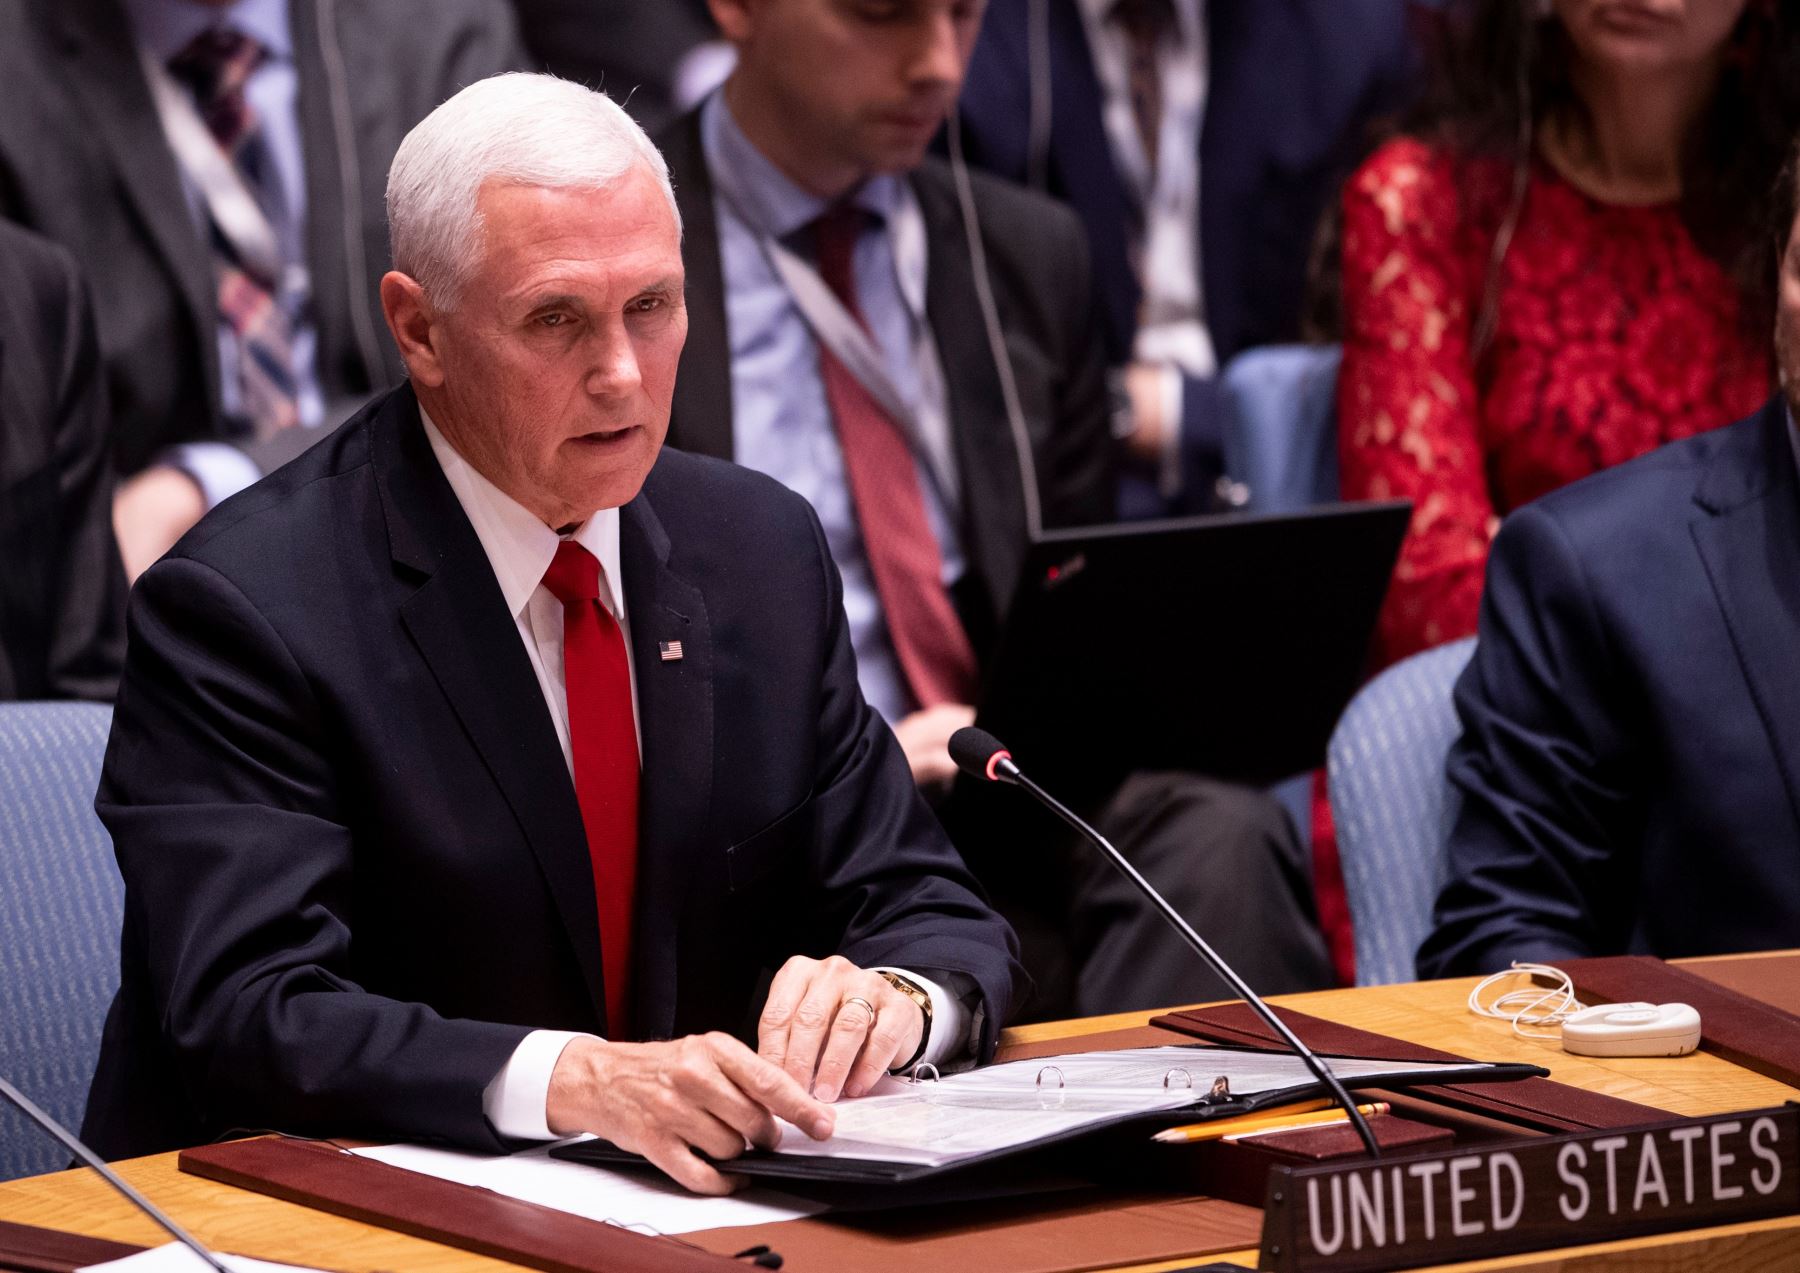 Mike Pence, habla durante una reunión del Consejo de Seguridad sobre la situación en Venezuela en las Naciones Unidas en Nueva York. Foto: AFP